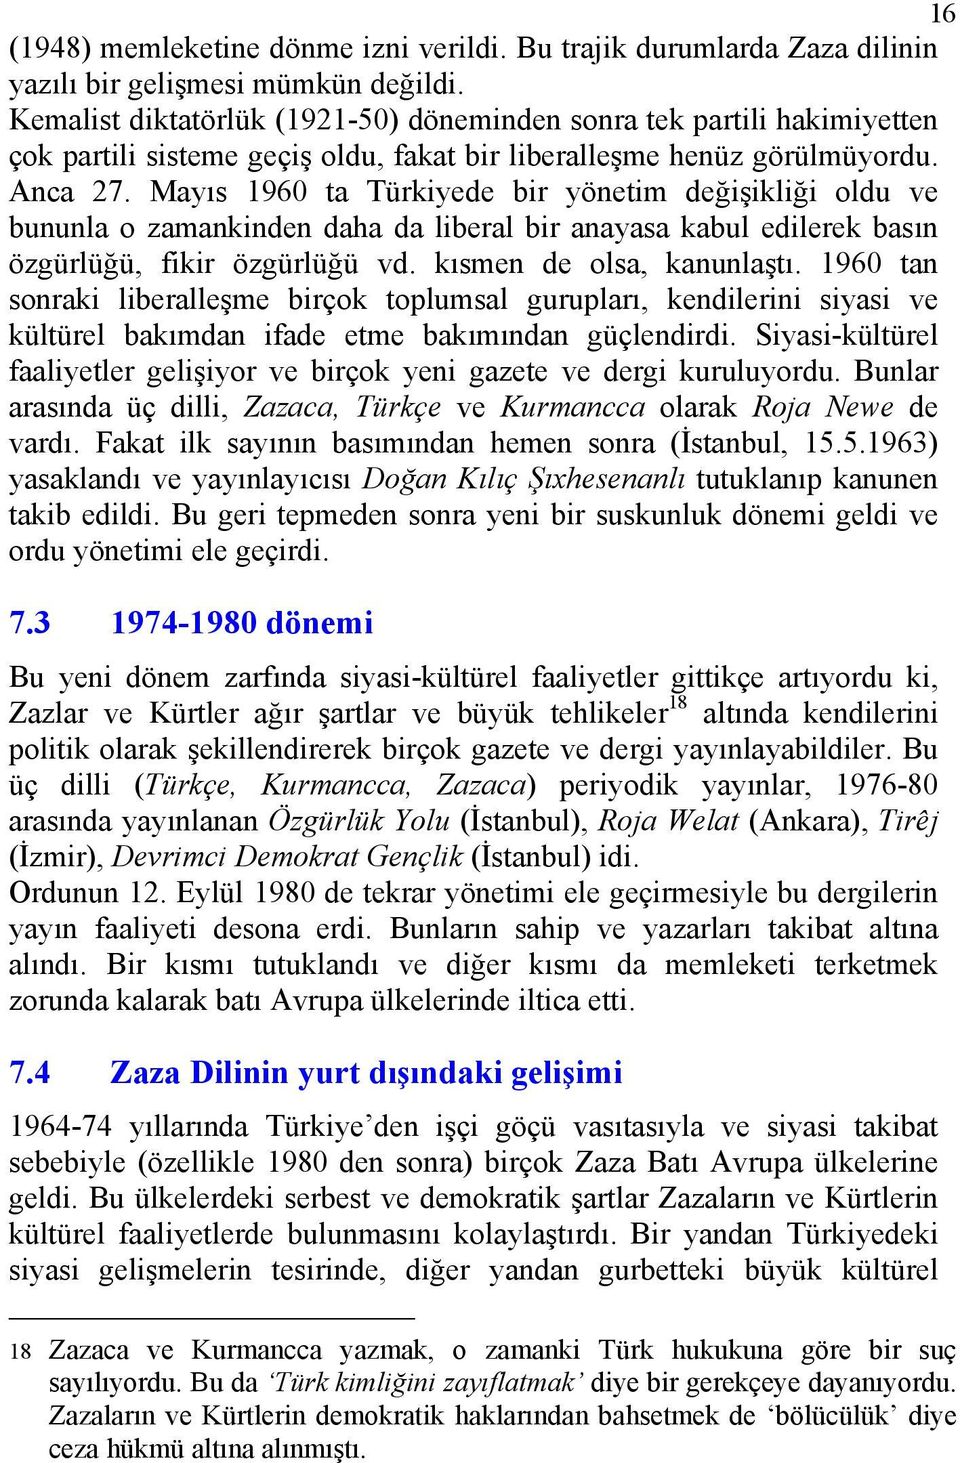 Mayıs 1960 ta Türkiyede bir yönetim değişikliği oldu ve bununla o zamankinden daha da liberal bir anayasa kabul edilerek basın özgürlüğü, fikir özgürlüğü vd. kısmen de olsa, kanunlaştı.